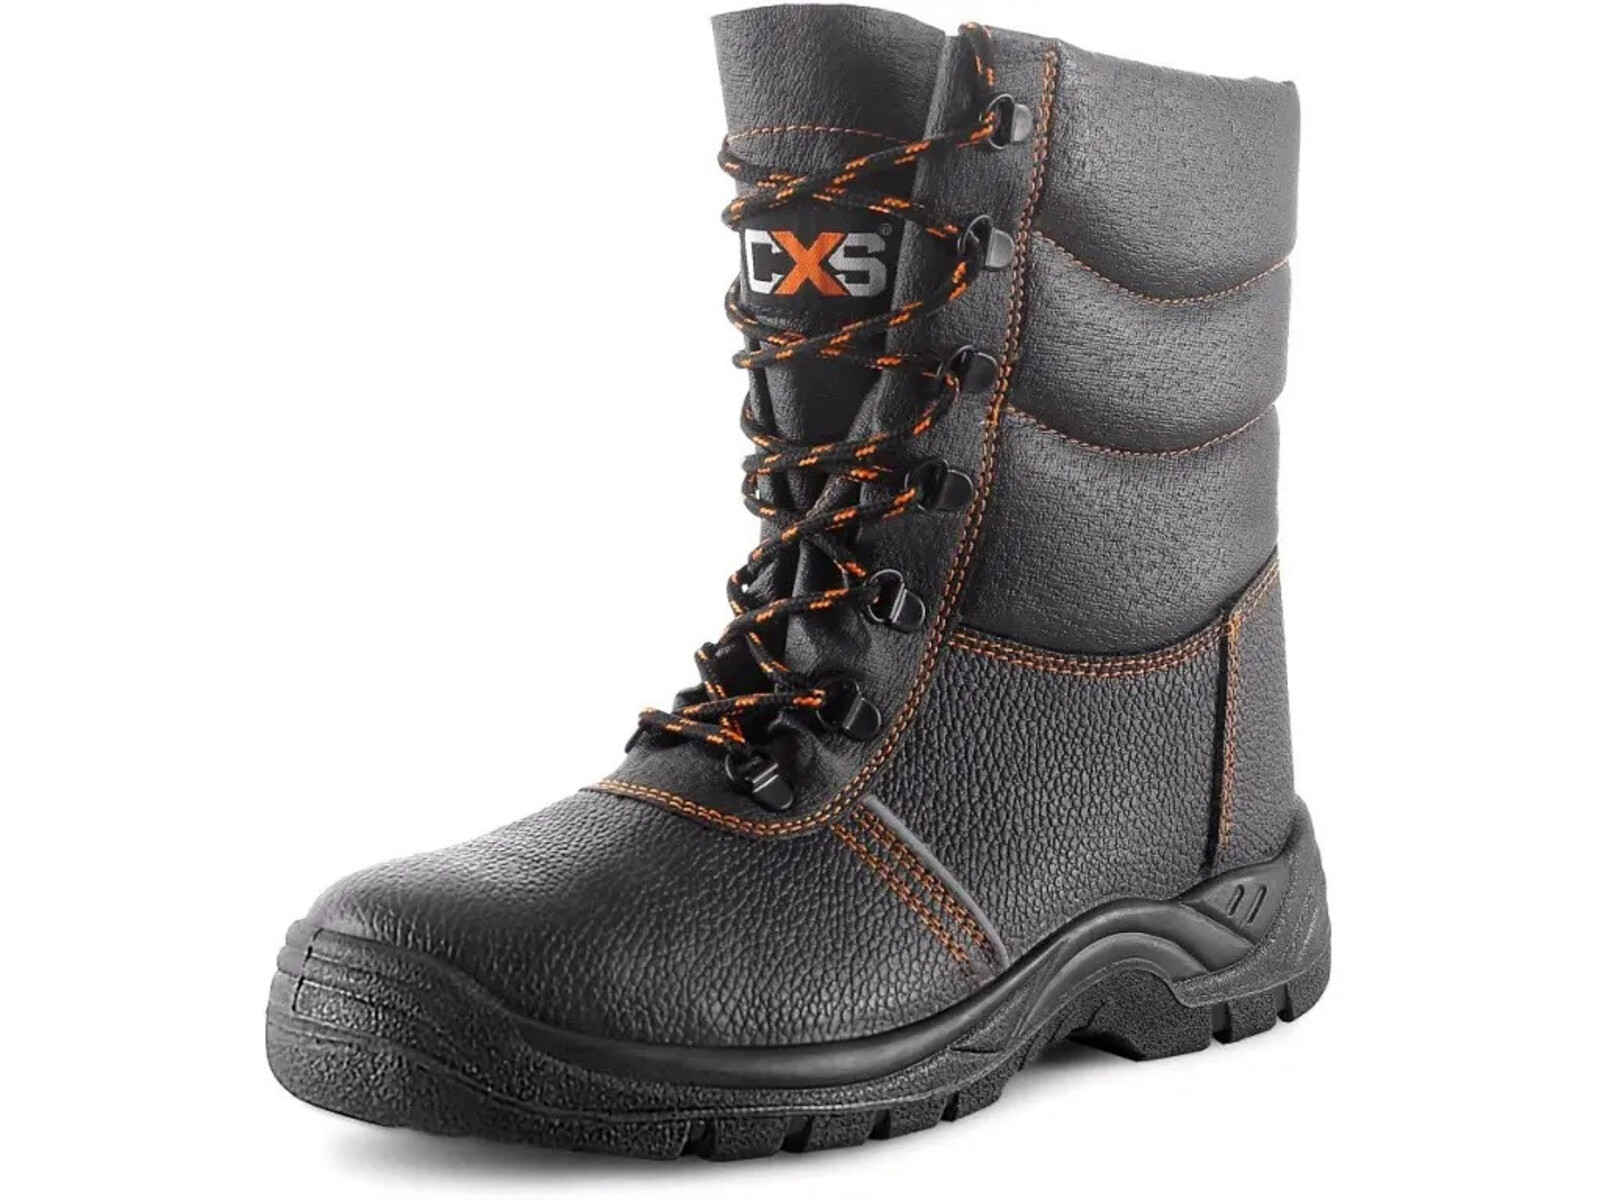 Zimná bezpečnostná poloholeňová obuv CXS Stone Topaz Winter S3 SRC - veľkosť: 49, farba: čierna/oranžová